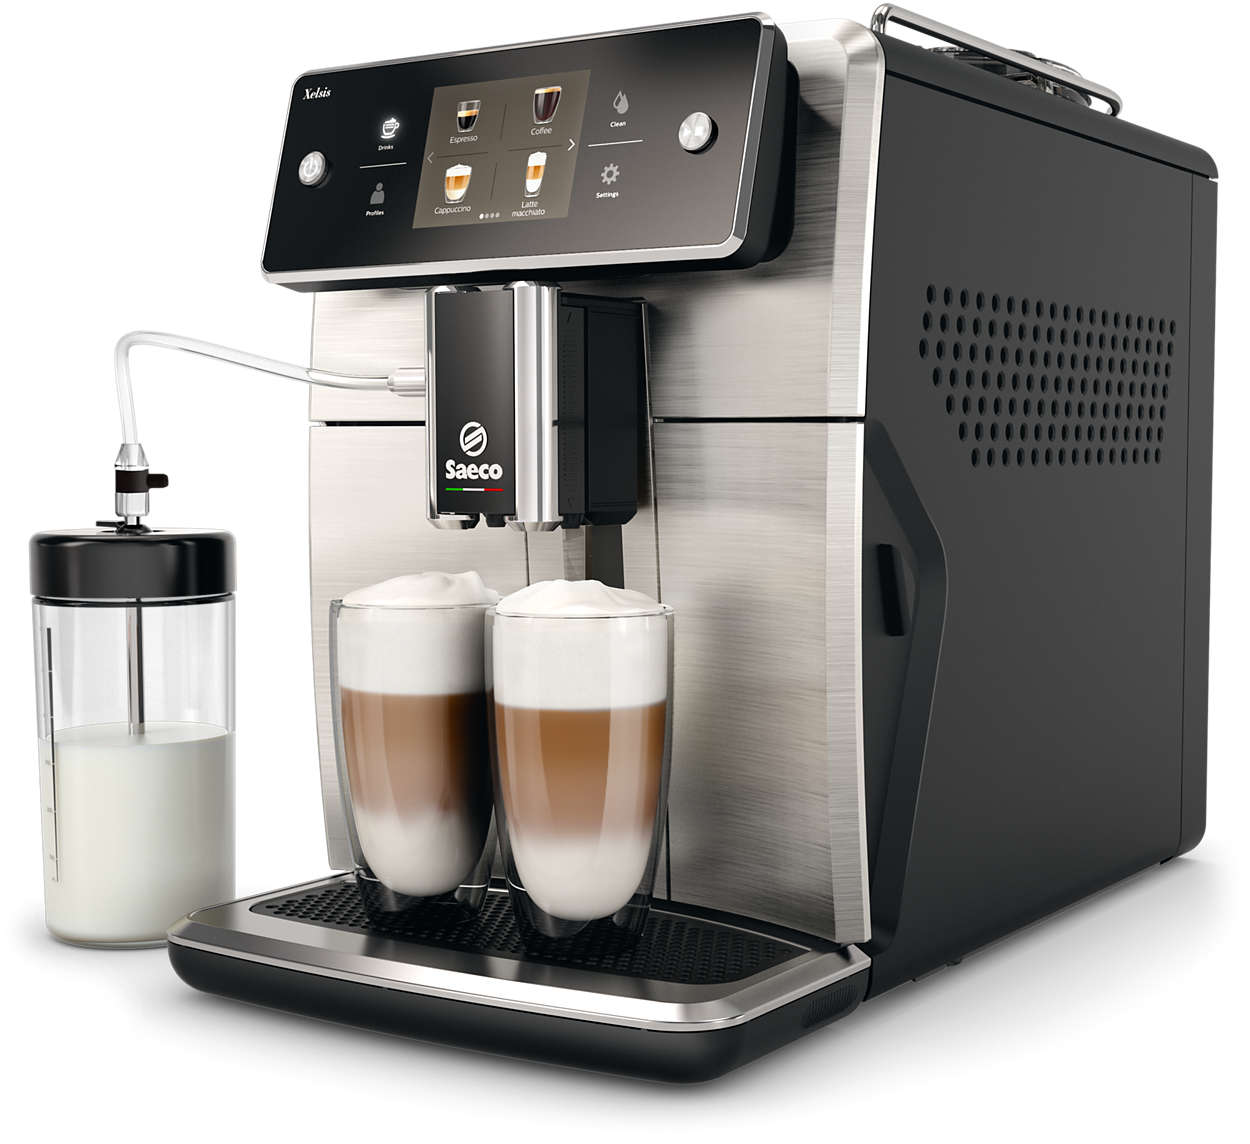 Najnaprednejši espresso kavni aparat Saeco do tega trenutka